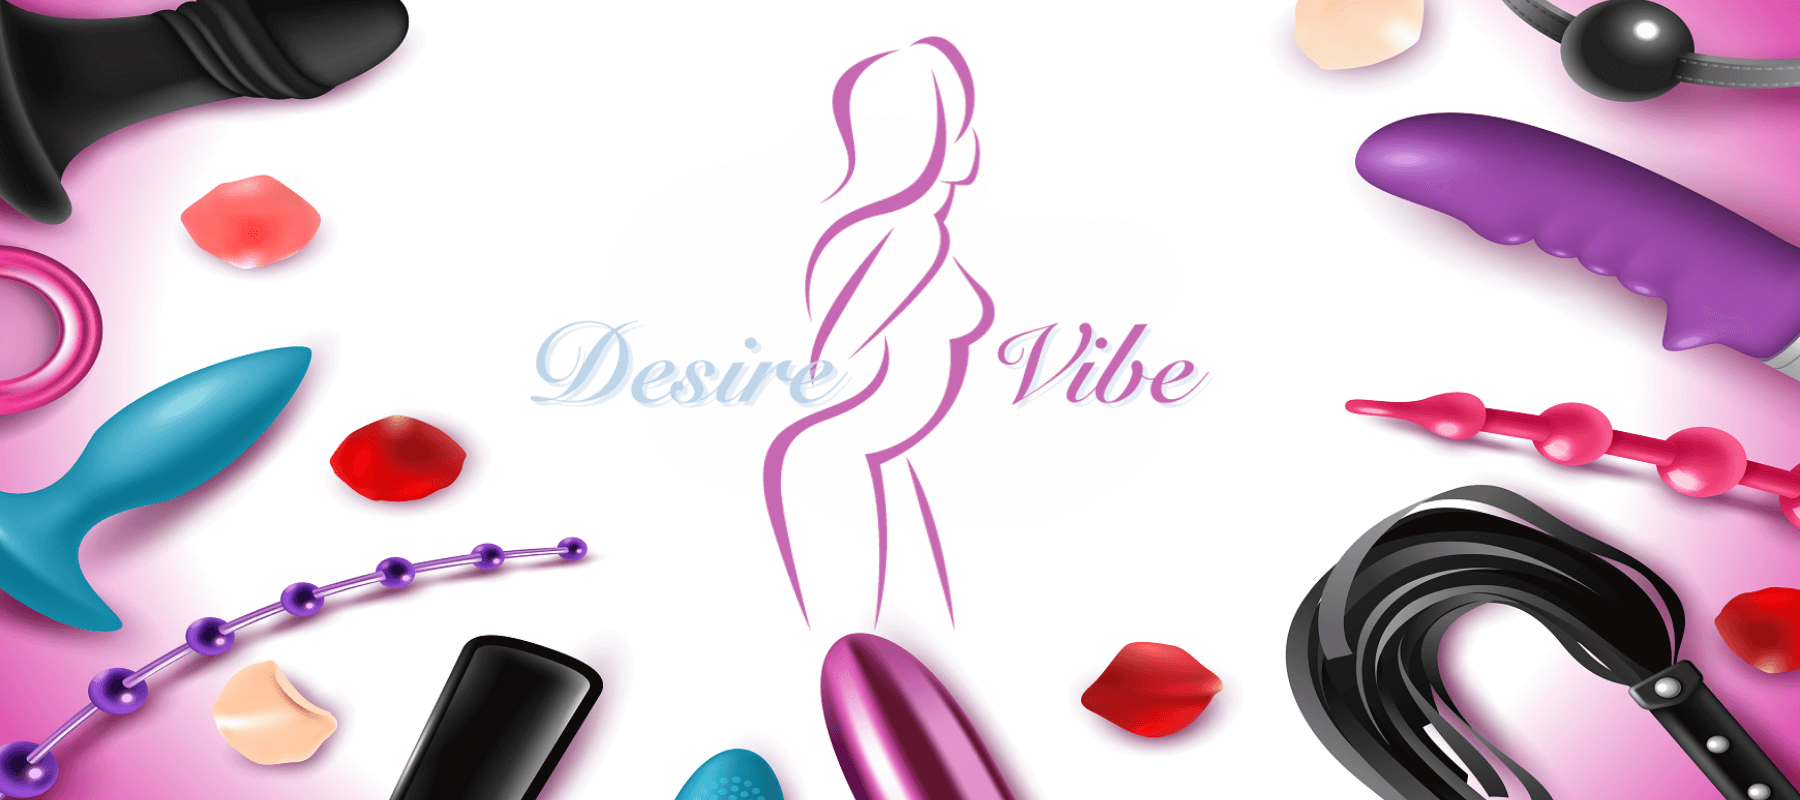 Slide promozionale di DesireVibe.com con una selezione di sex toys inclusi vibratori e fruste su uno sfondo bianco e rosa, evidenziando la varietà e la qualità dei prodotti offerti